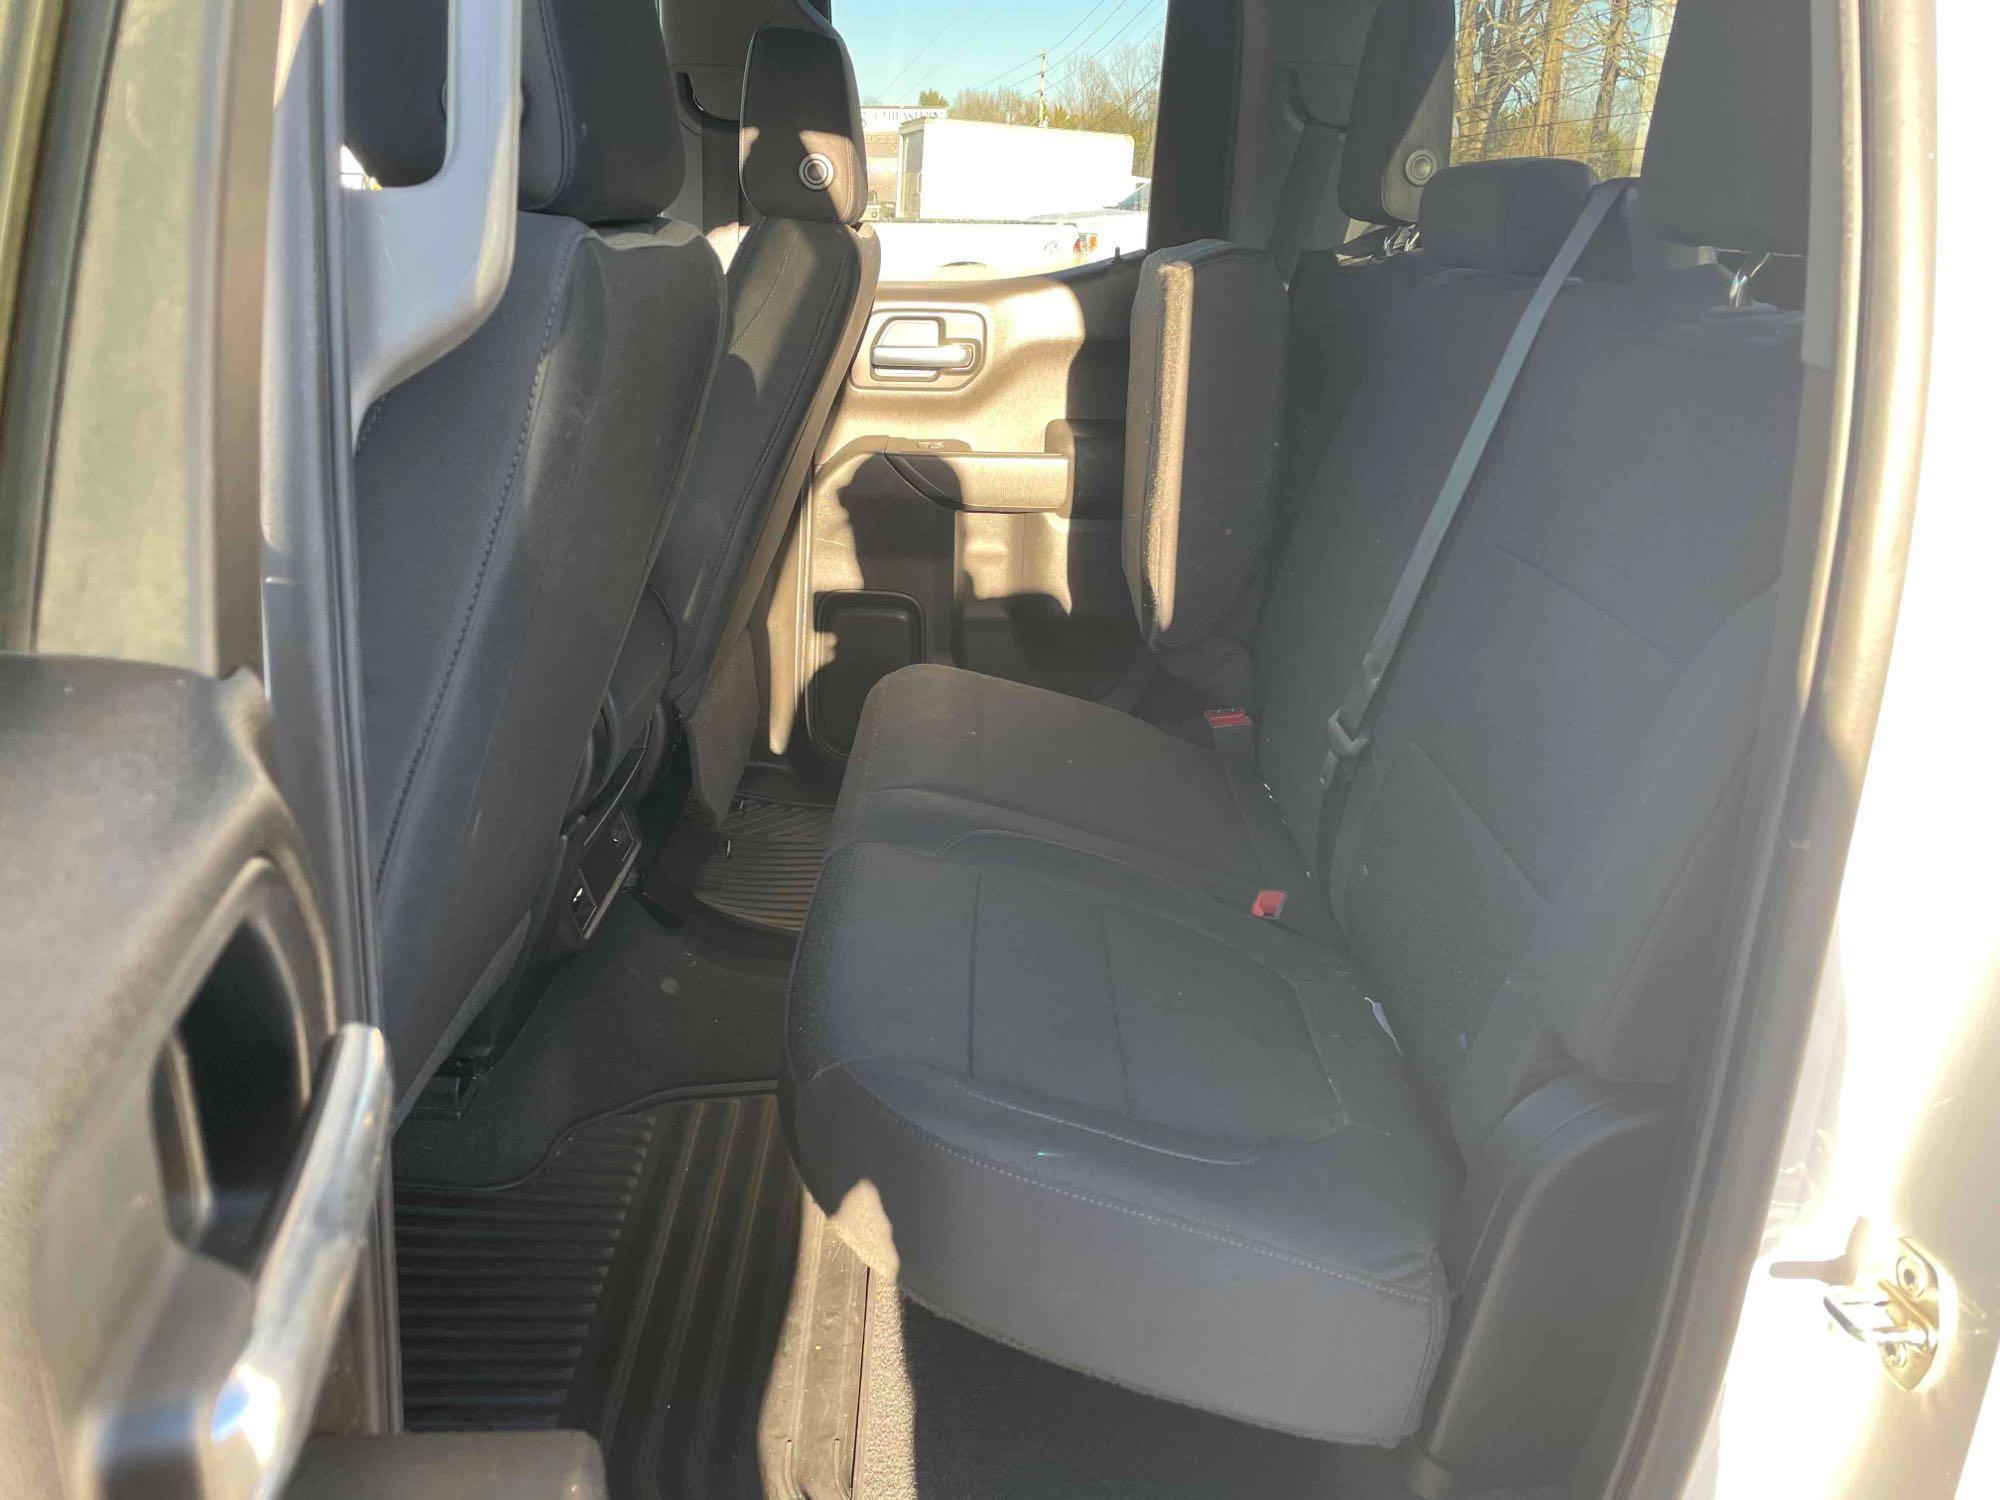 2019 Chevrolet Silverado 4X4 Pickup Truck, VIN # 1GCRYBEF1KZ181438